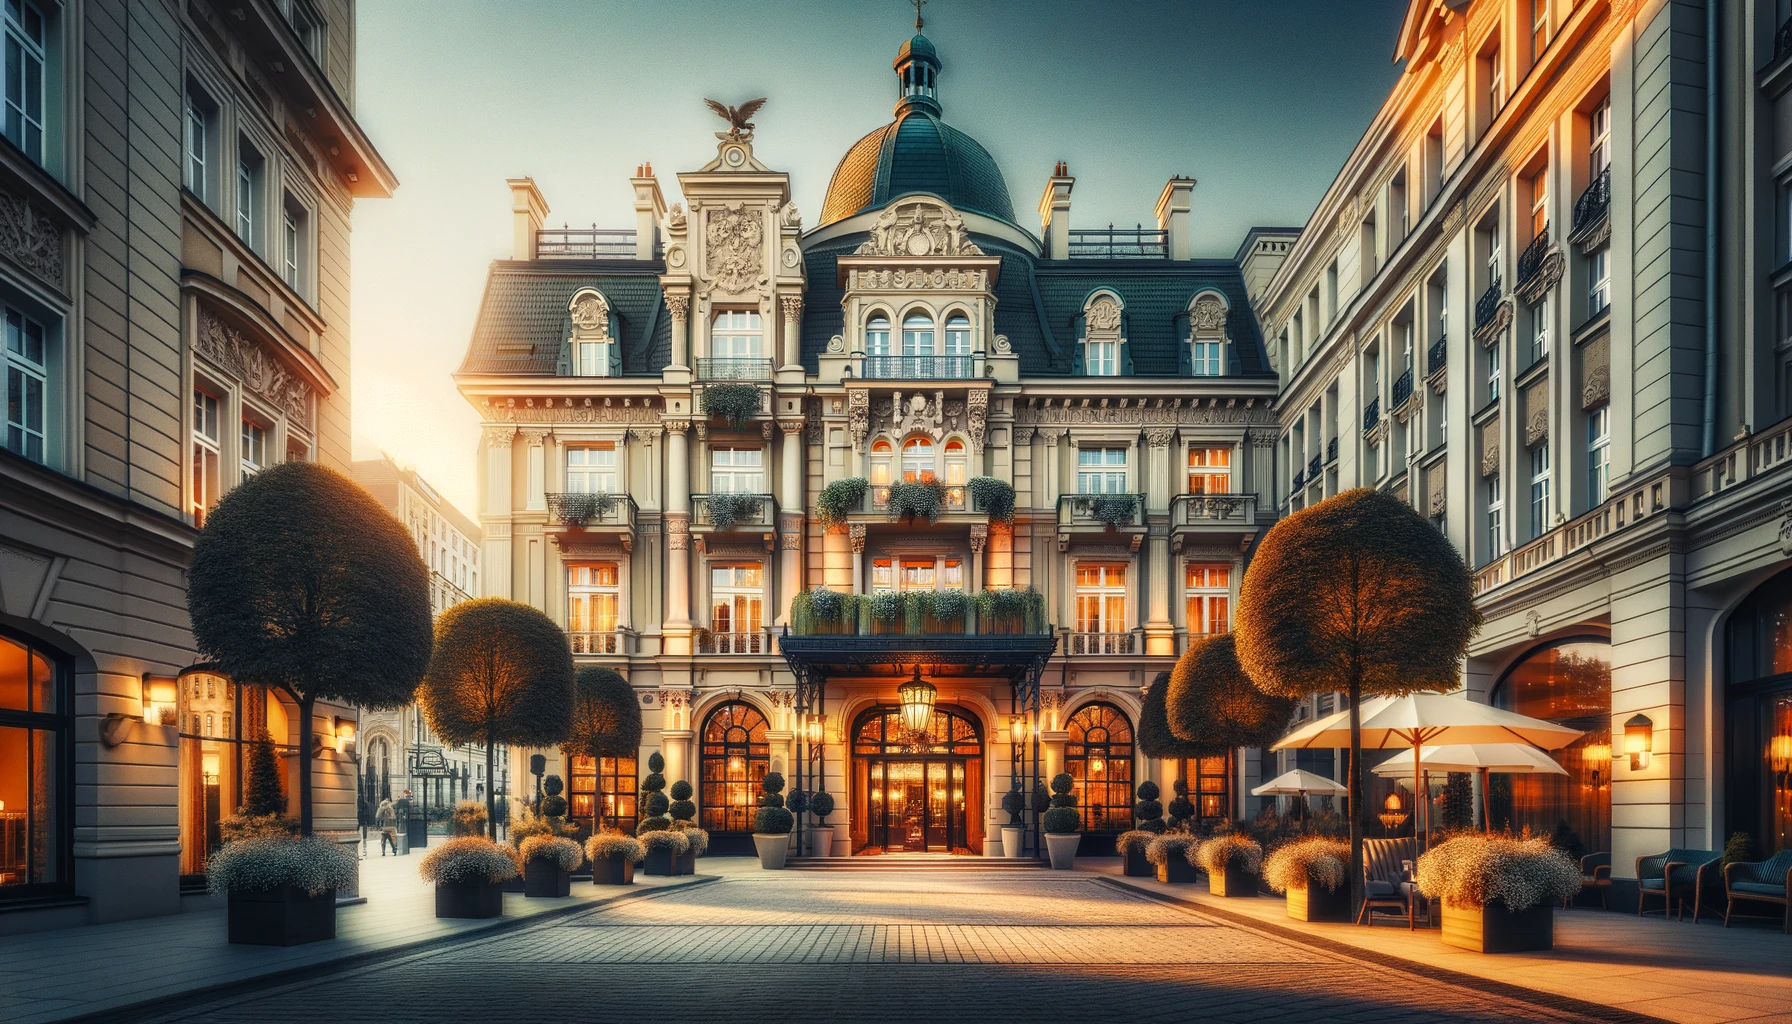 Elegancki widok zewnętrzny luksusowego Hotelu Monopol we Wrocławiu, łączący historyczną i nowoczesną architekturę.